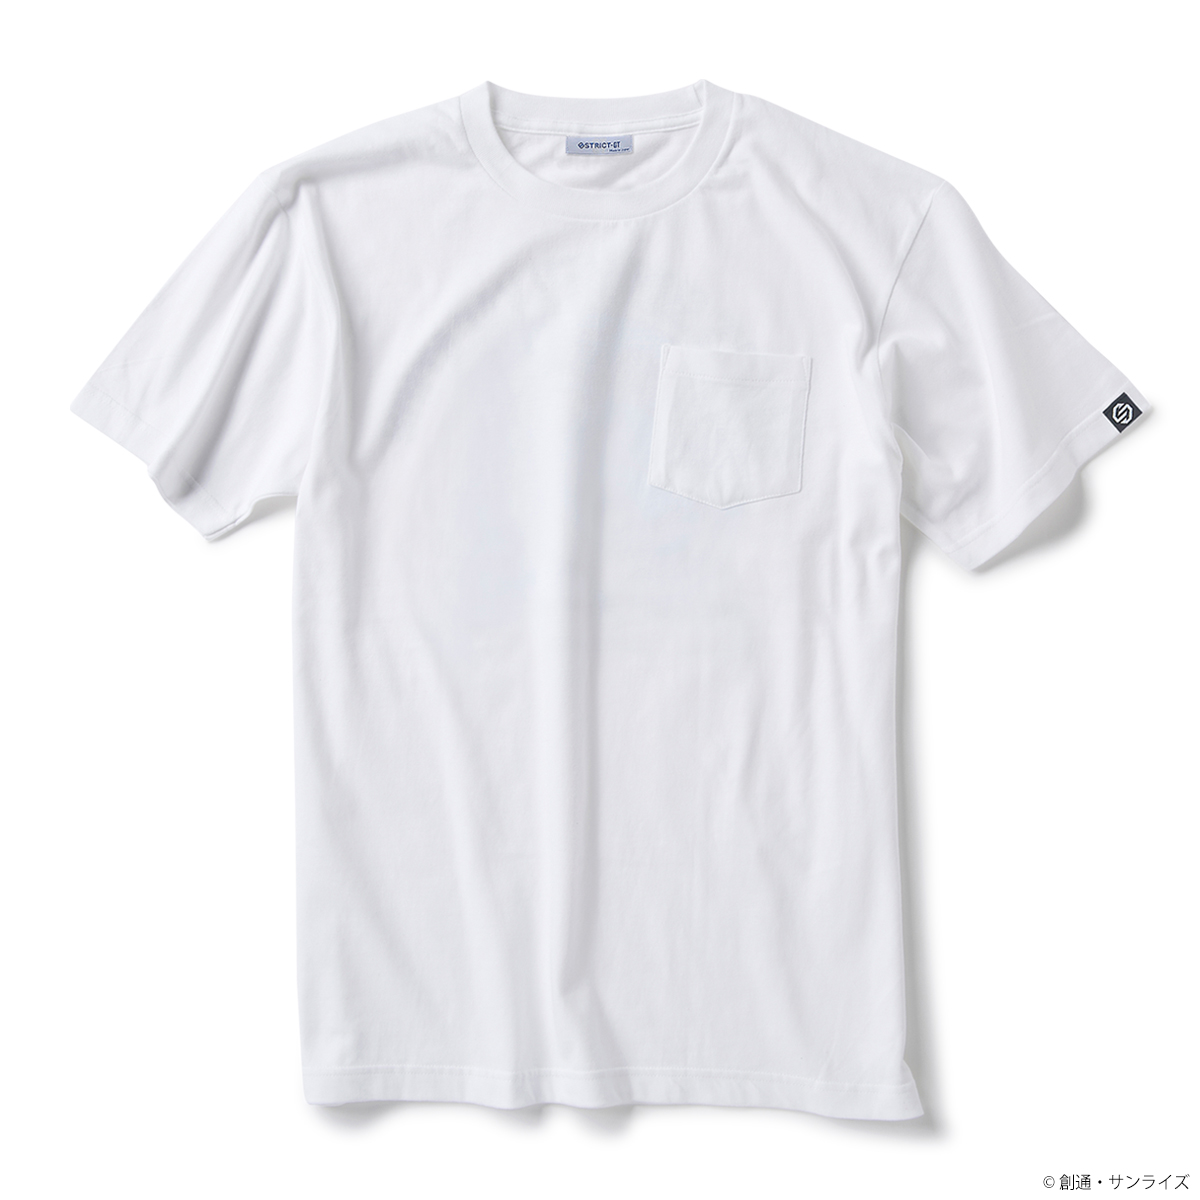 STRICT-G『機動戦士ガンダム』親子Tシャツ HARO’S VACATION